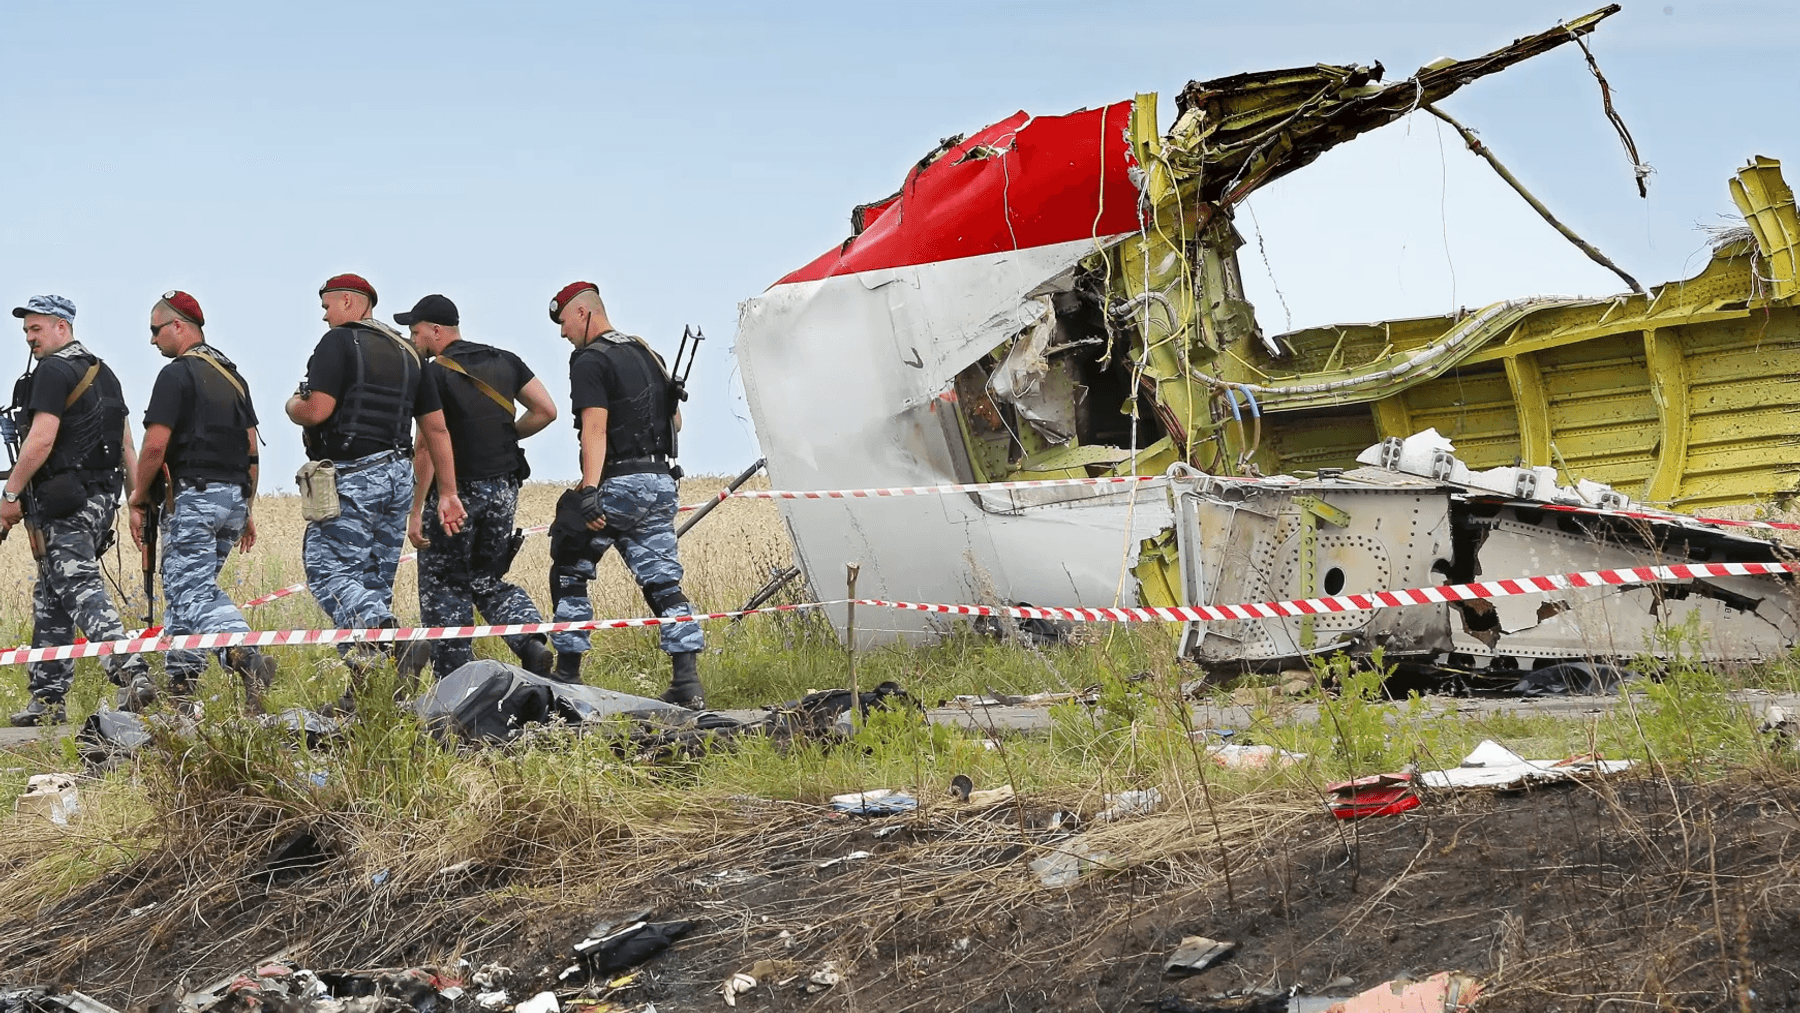 MH17-Abschuss-Putin-soll-Raketenlieferung-pers-nlich-autorisiert-haben